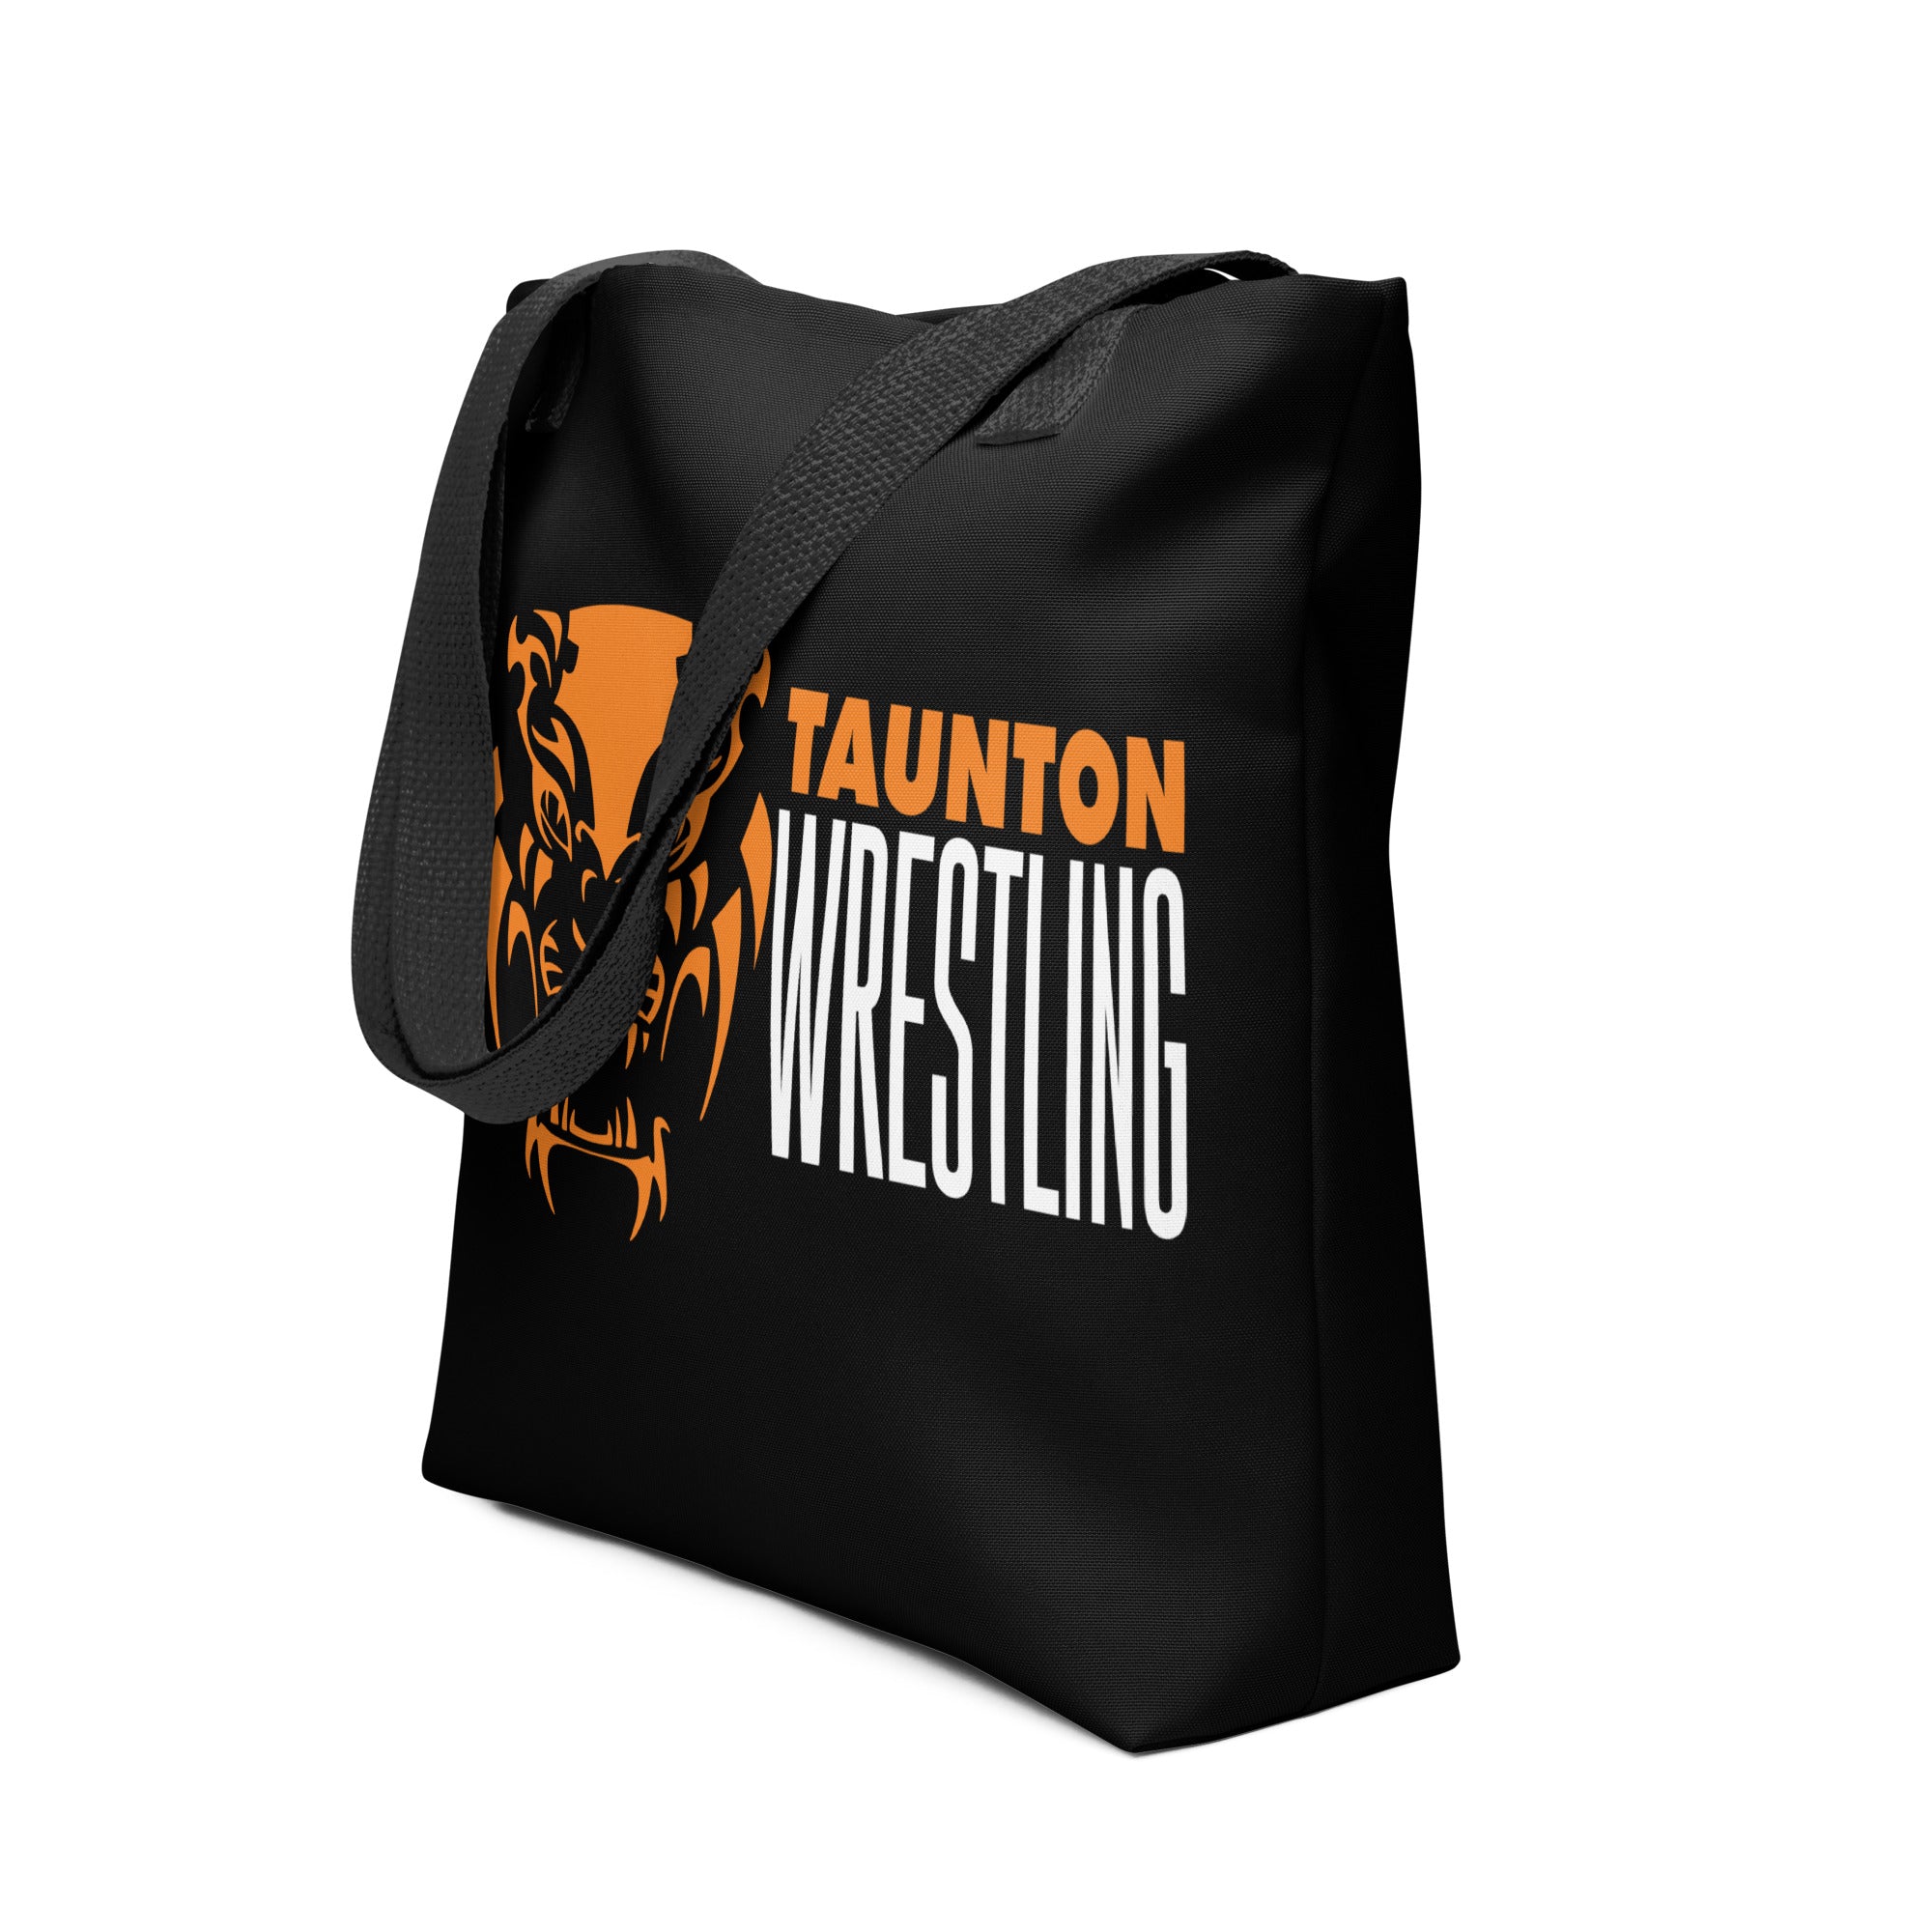 Taunton Wrestling All Over Print Tote